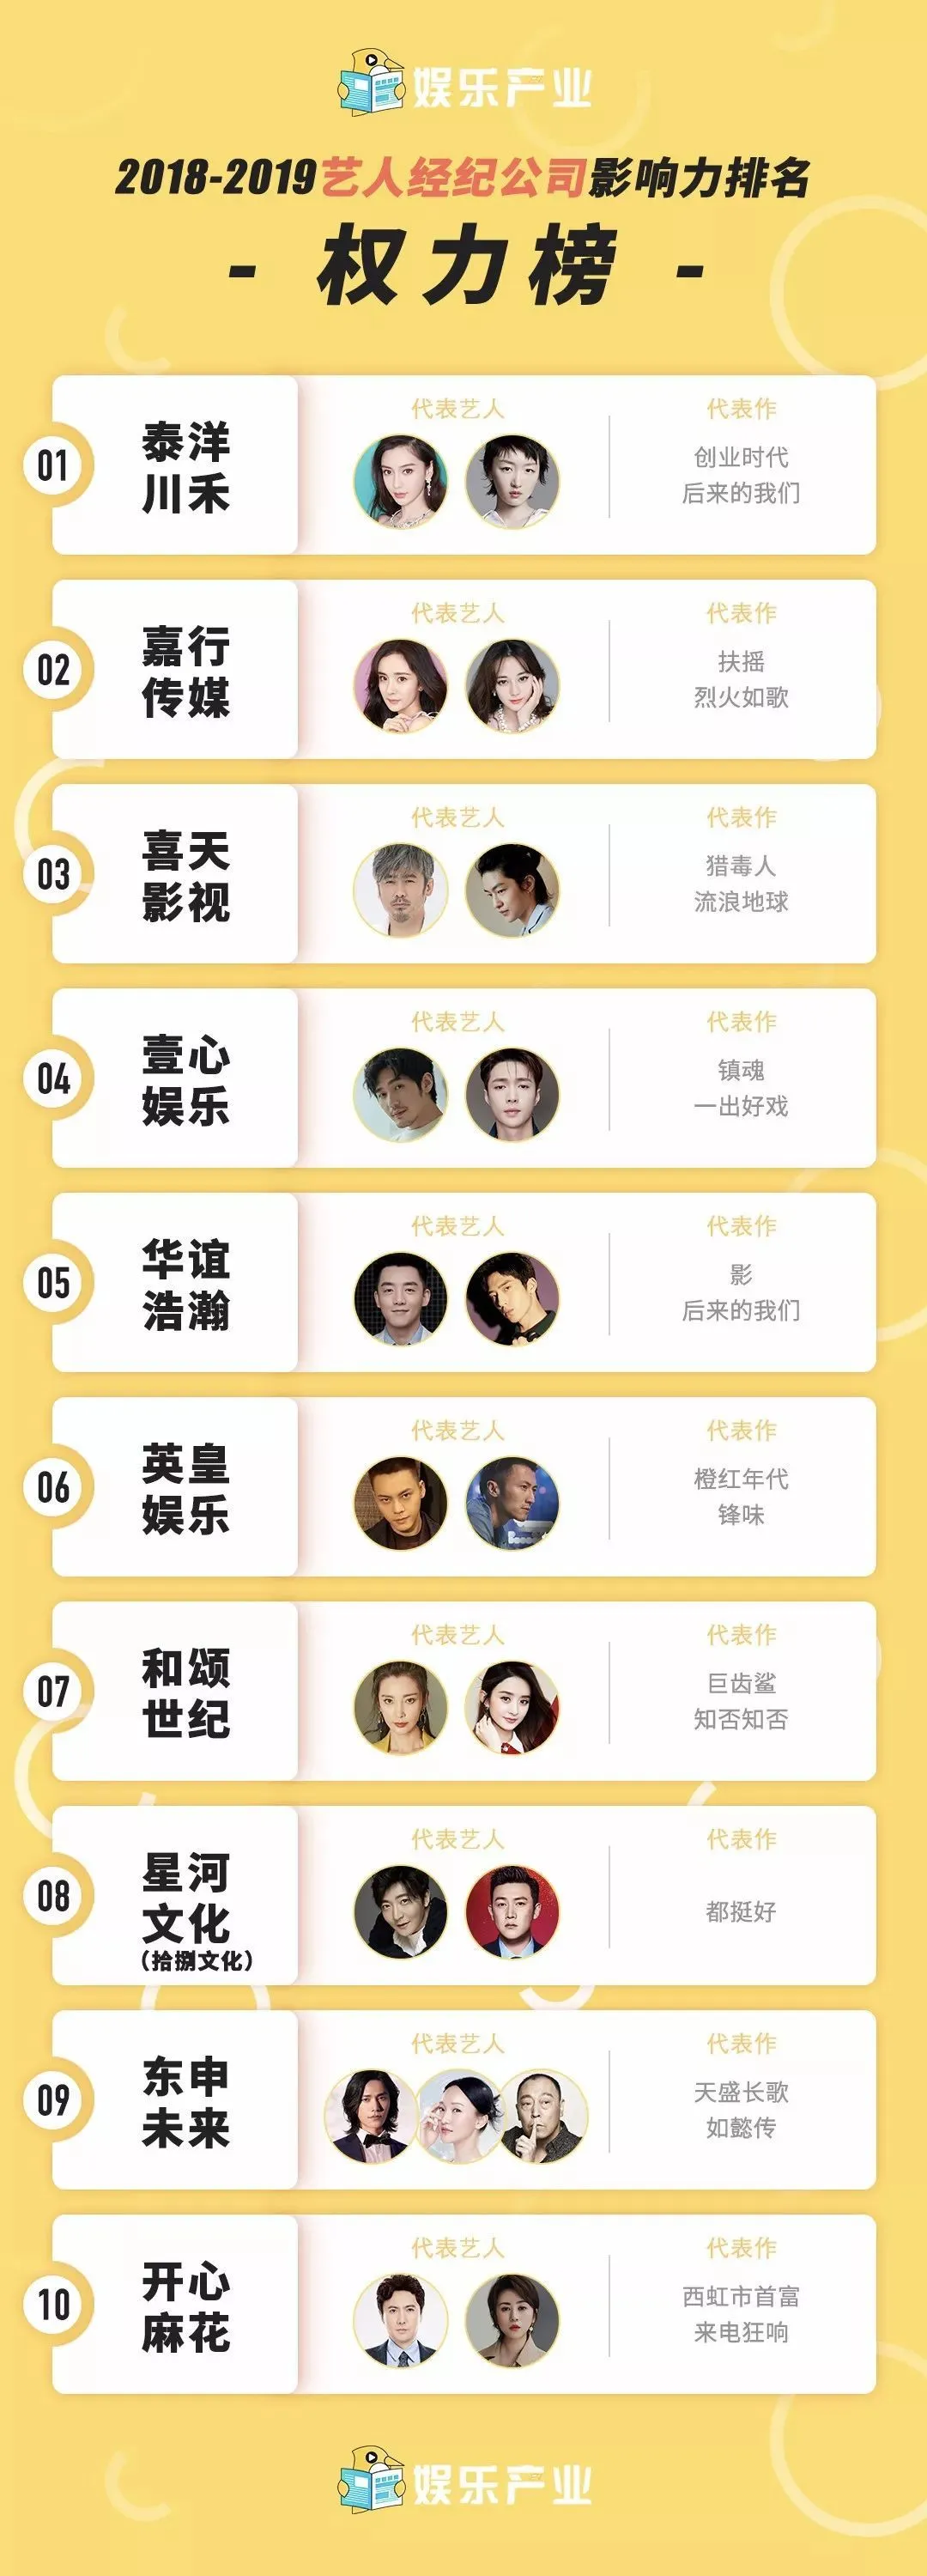 50 công ty giải trí hàng đầu Cbiz: Nhà Châu Đông Vũ #1, Yuehua ba hoa cho lắm lại rơi khỏi top 20 1